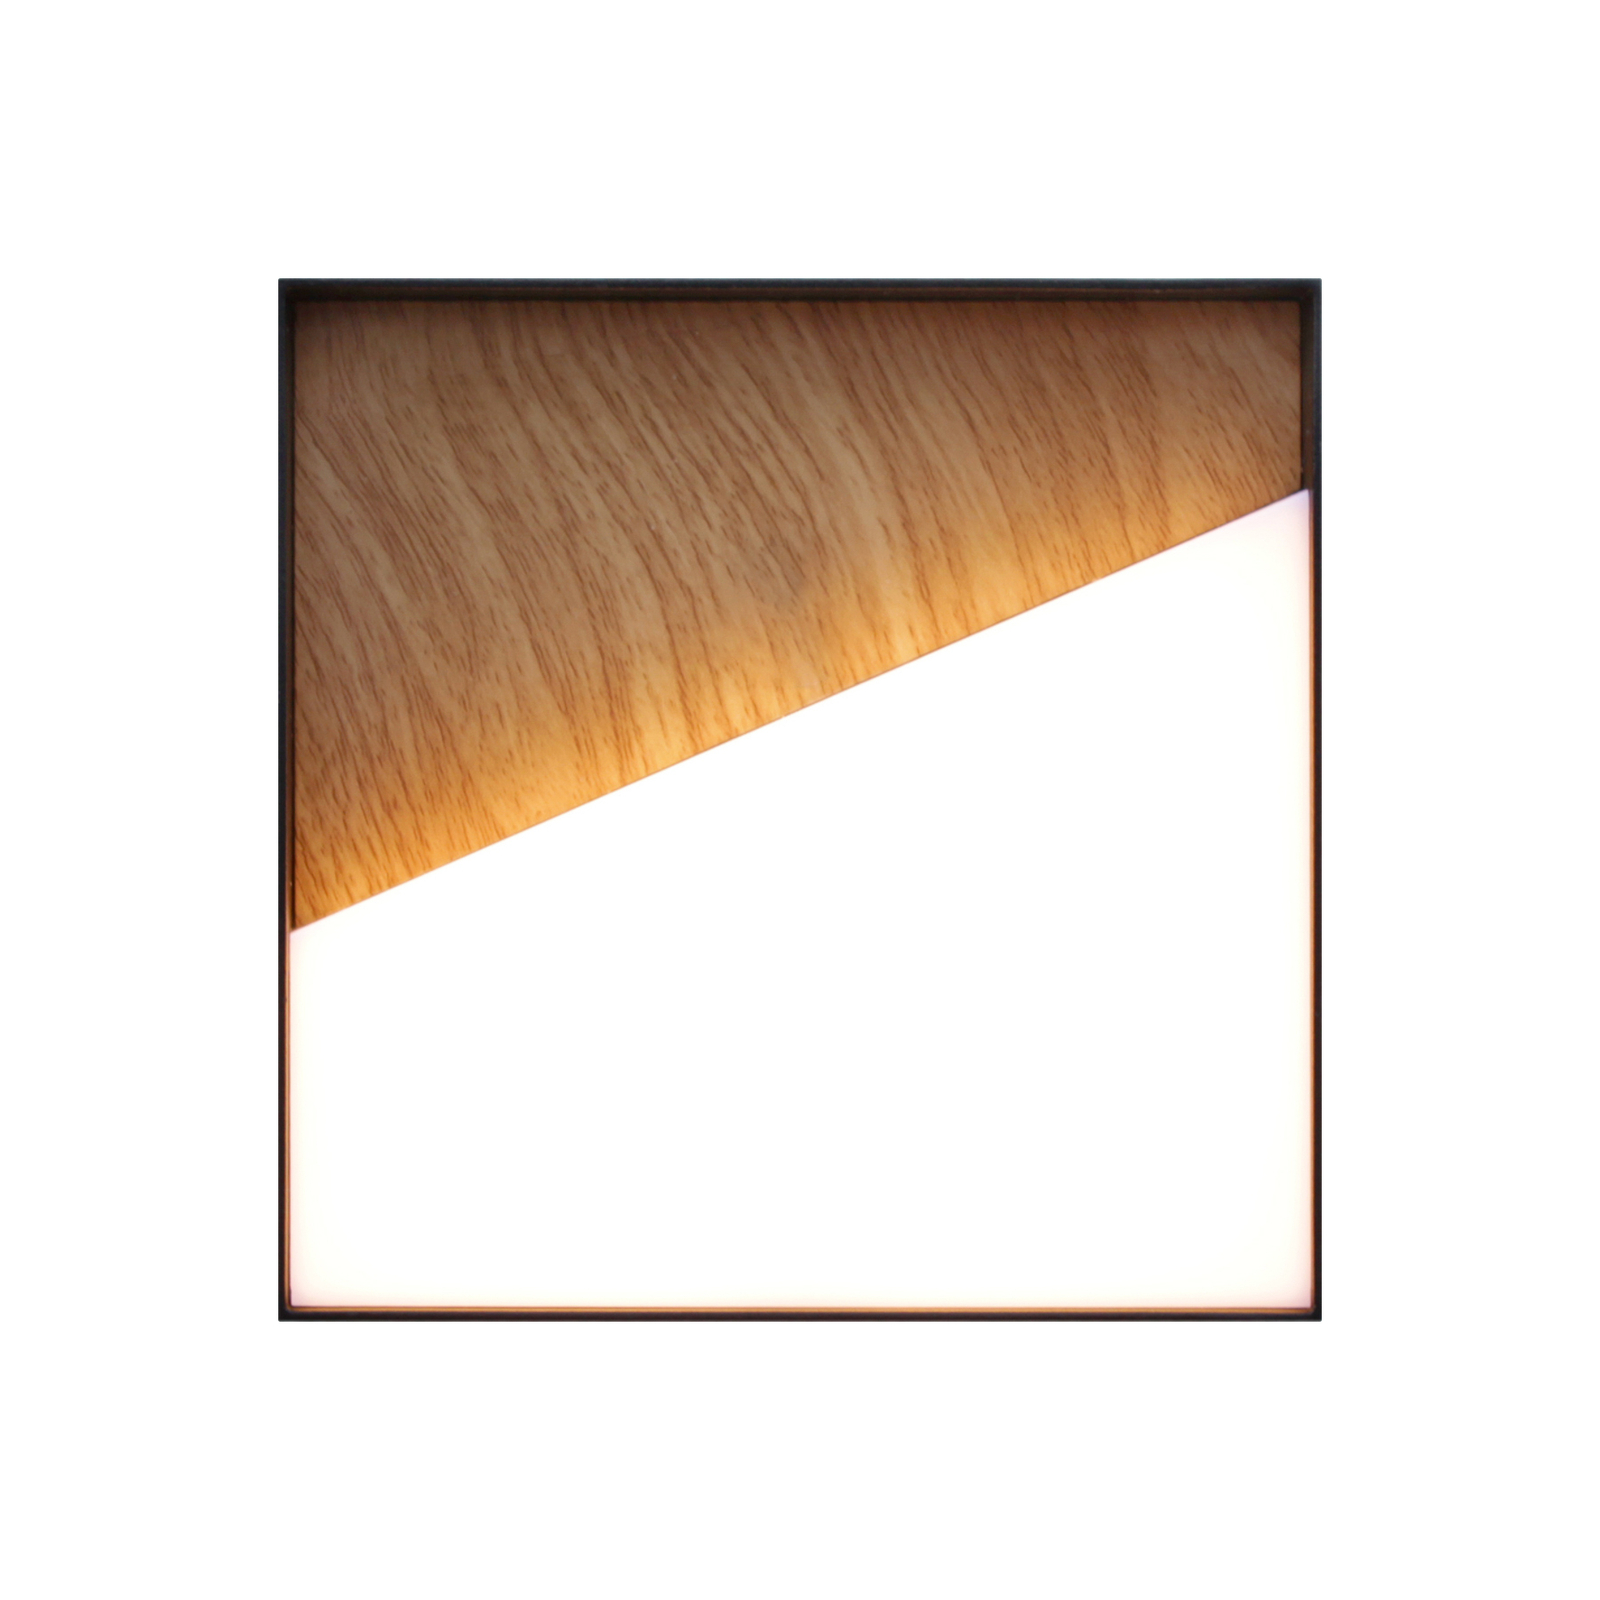 LED dobíjacie vonkajšie nástenné svetlo Meg, farba dreva, 15 x 15 cm